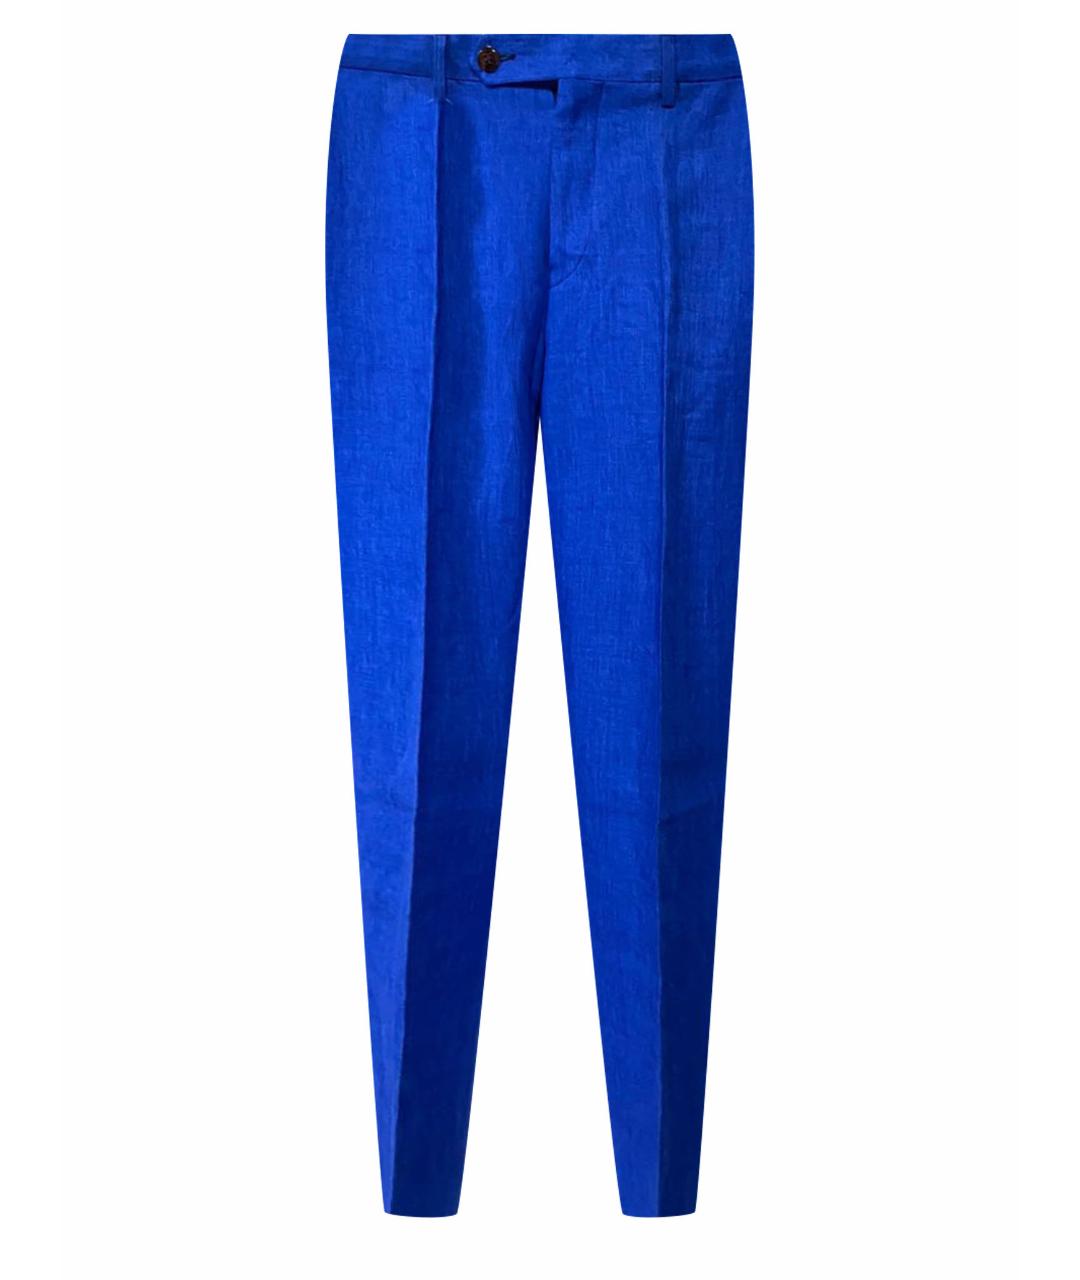 MARCOPESCAROLO Синие льняные классические брюки, фото 1